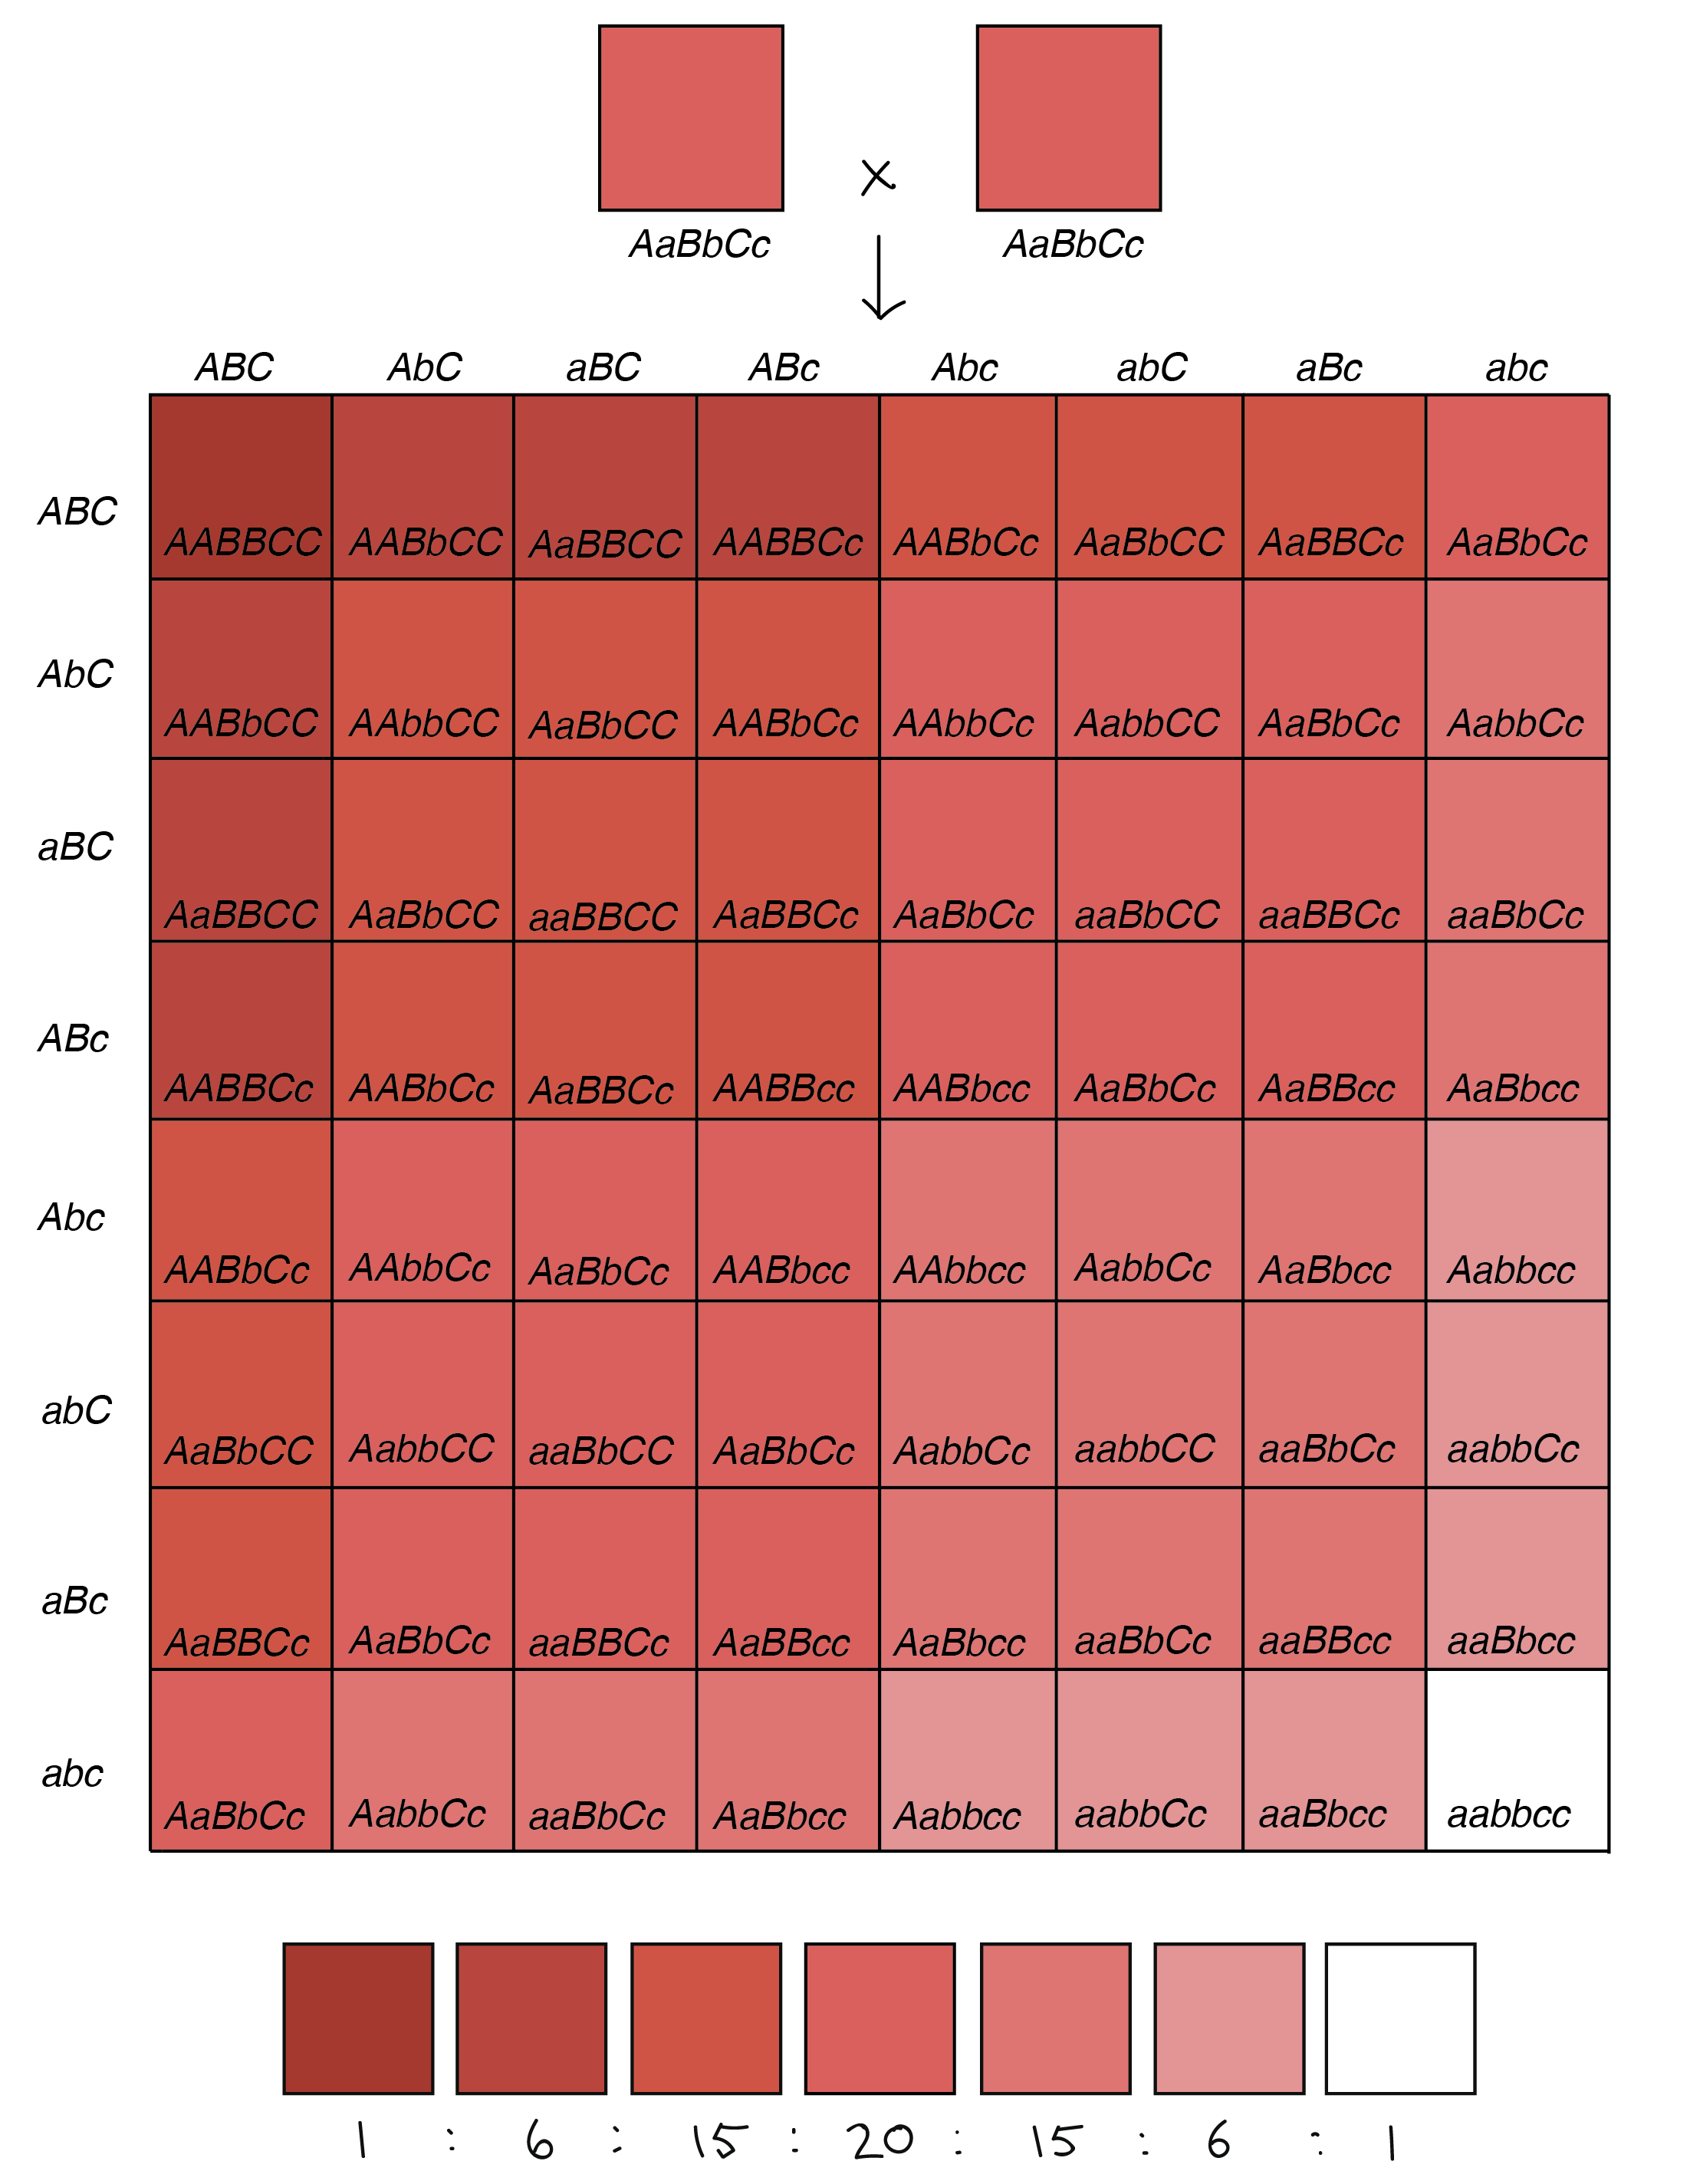 Cuadrado Punnett de 64 cuadrados que ilustra los fenotipos de la descendencia de un cruce _aABbcc_ x _aABbcc_ (en el que cada alelo en mayúscula aporta una unidad de pigmento, mientras que cada alelo minúscula aporta cero unidades de pigmento). De los 64 cuadrados en la tabla: 1 cuadrado produce un fenotipo rojo muy muy oscuro (seis unidades de pigmento). 6 cuadrados producen un fenotipo rojo muy oscuro (cinco unidades de pigmento). 15 cuadrados producen un fenotipo rojo oscuro (cuatro unidades de pigmento). 20 cuadrados producen un fenotipo rojo (tres unidades de pigmento). 15 cuadrados producen un fenotipo rojo claro (dos unidades de pigmento). 6 cuadrados producen un fenotipo rojo muy claro (una unidad de pigmento). 1 cuadrado produce un fenotipo blanco (sin unidades de pigmento).